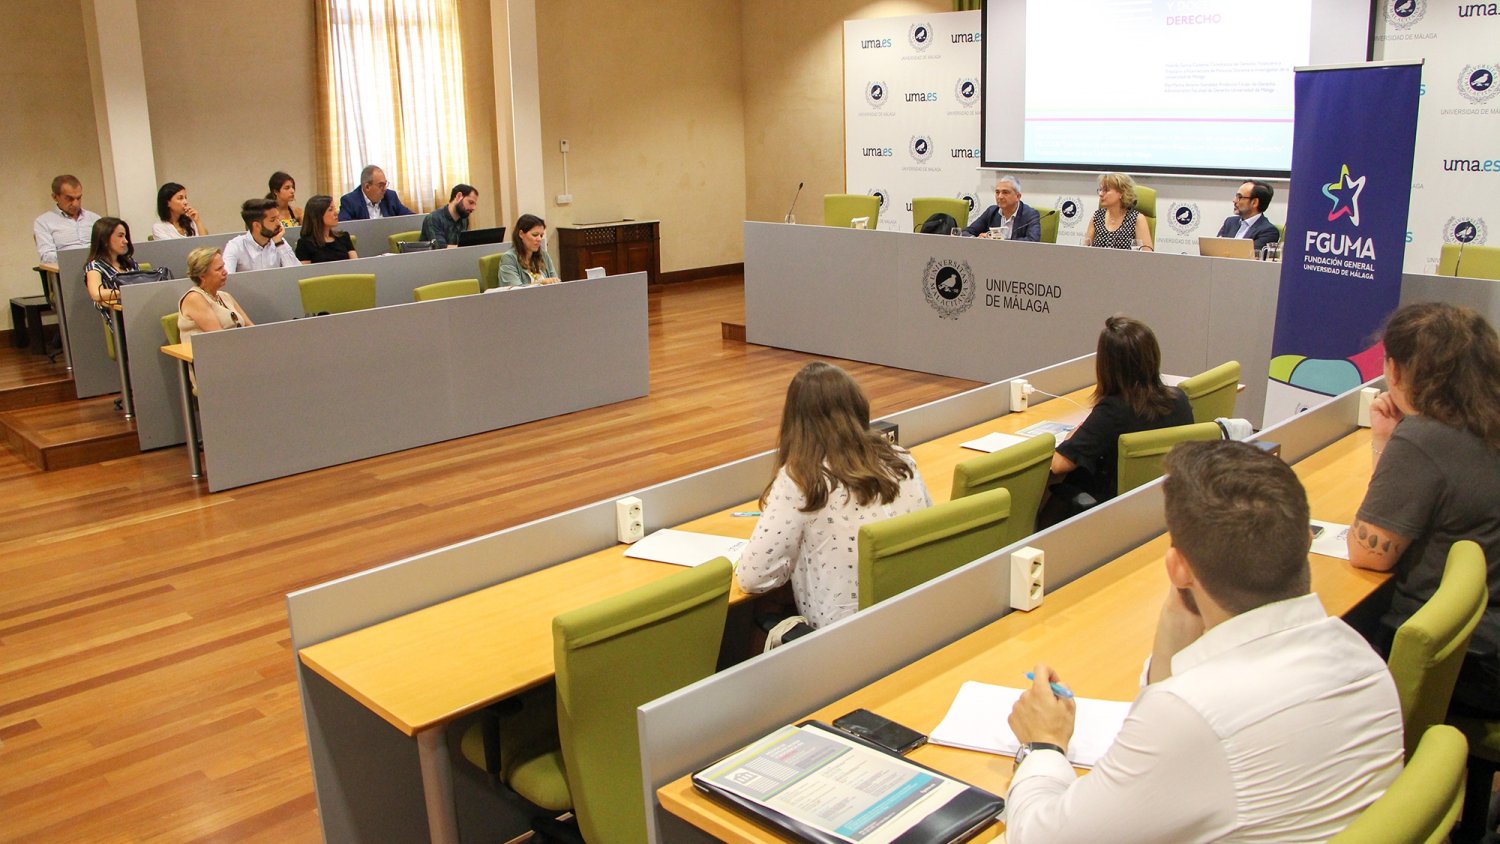 La Universidad de Málaga organiza unas jornadas de debate sobre Medios de comunicación y Derecho